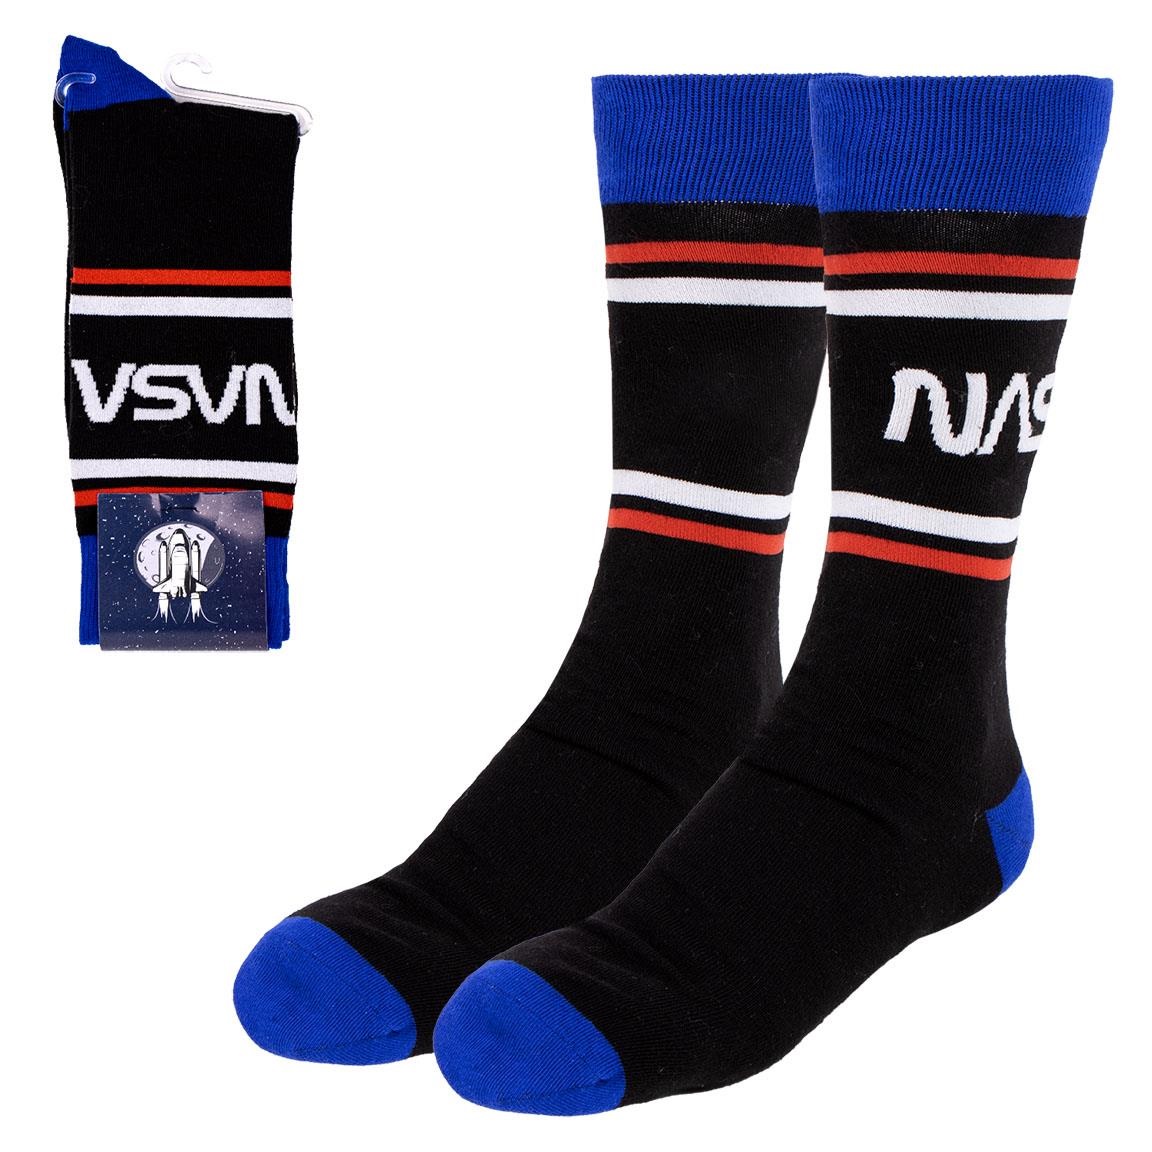 NASA - ponožky - černé S/M